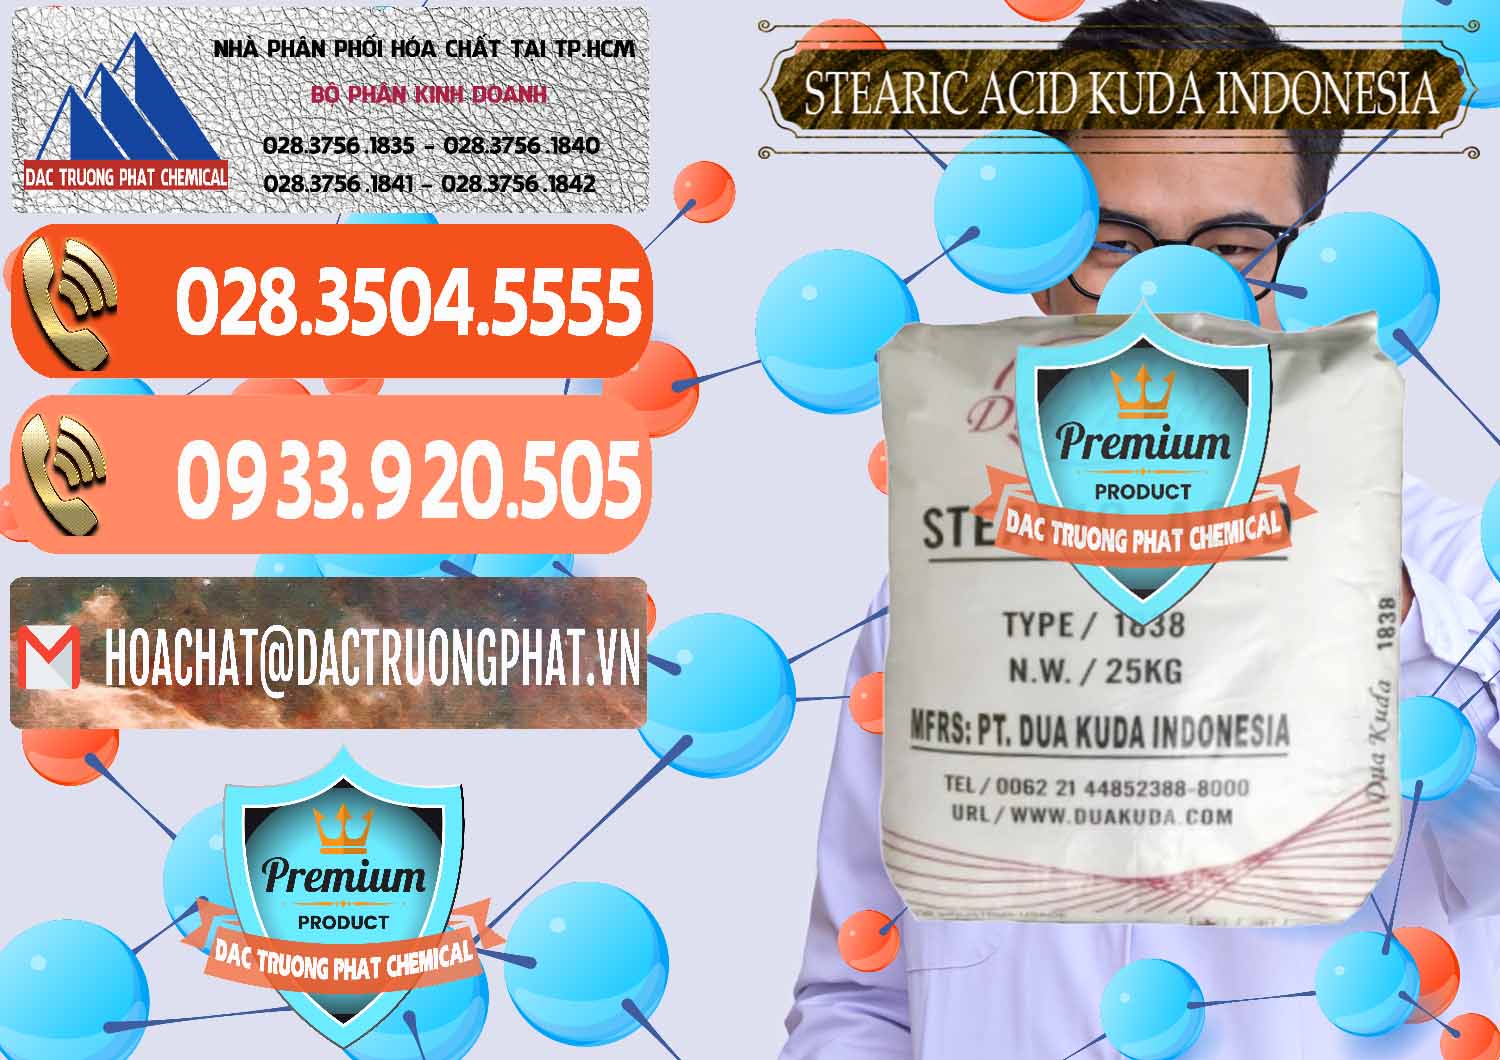 Nhập khẩu và bán Axit Stearic - Stearic Acid Dua Kuda Indonesia - 0388 - Công ty kinh doanh - phân phối hóa chất tại TP.HCM - hoachatmientay.com